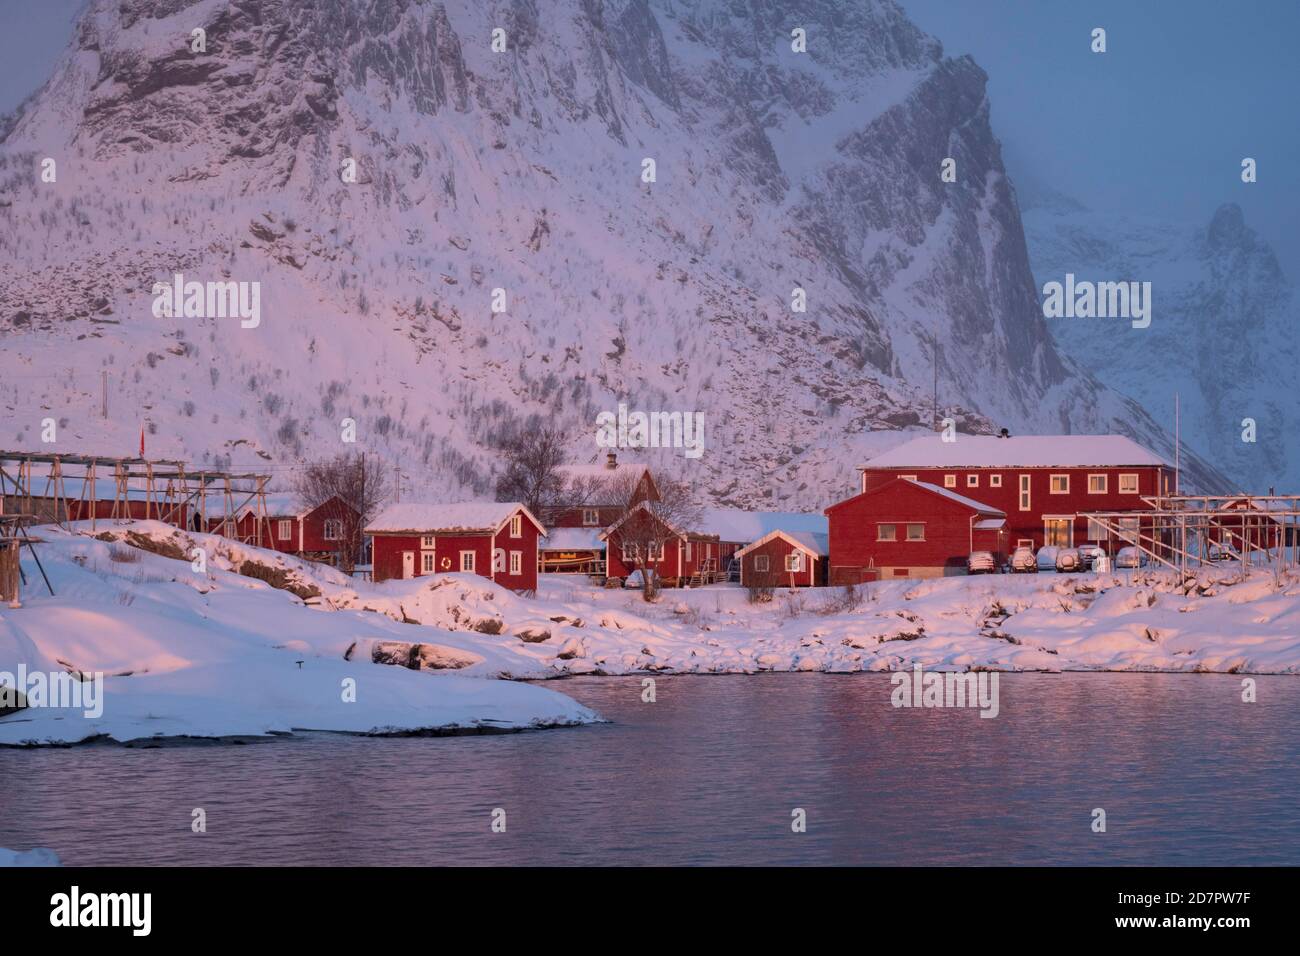 Winterstimmung am frühen Morgen im Fischerdorf, Stockfischregale, Schneefall in den Bergen, reine, Nordland, Lofoten, Norwegen Stockfoto